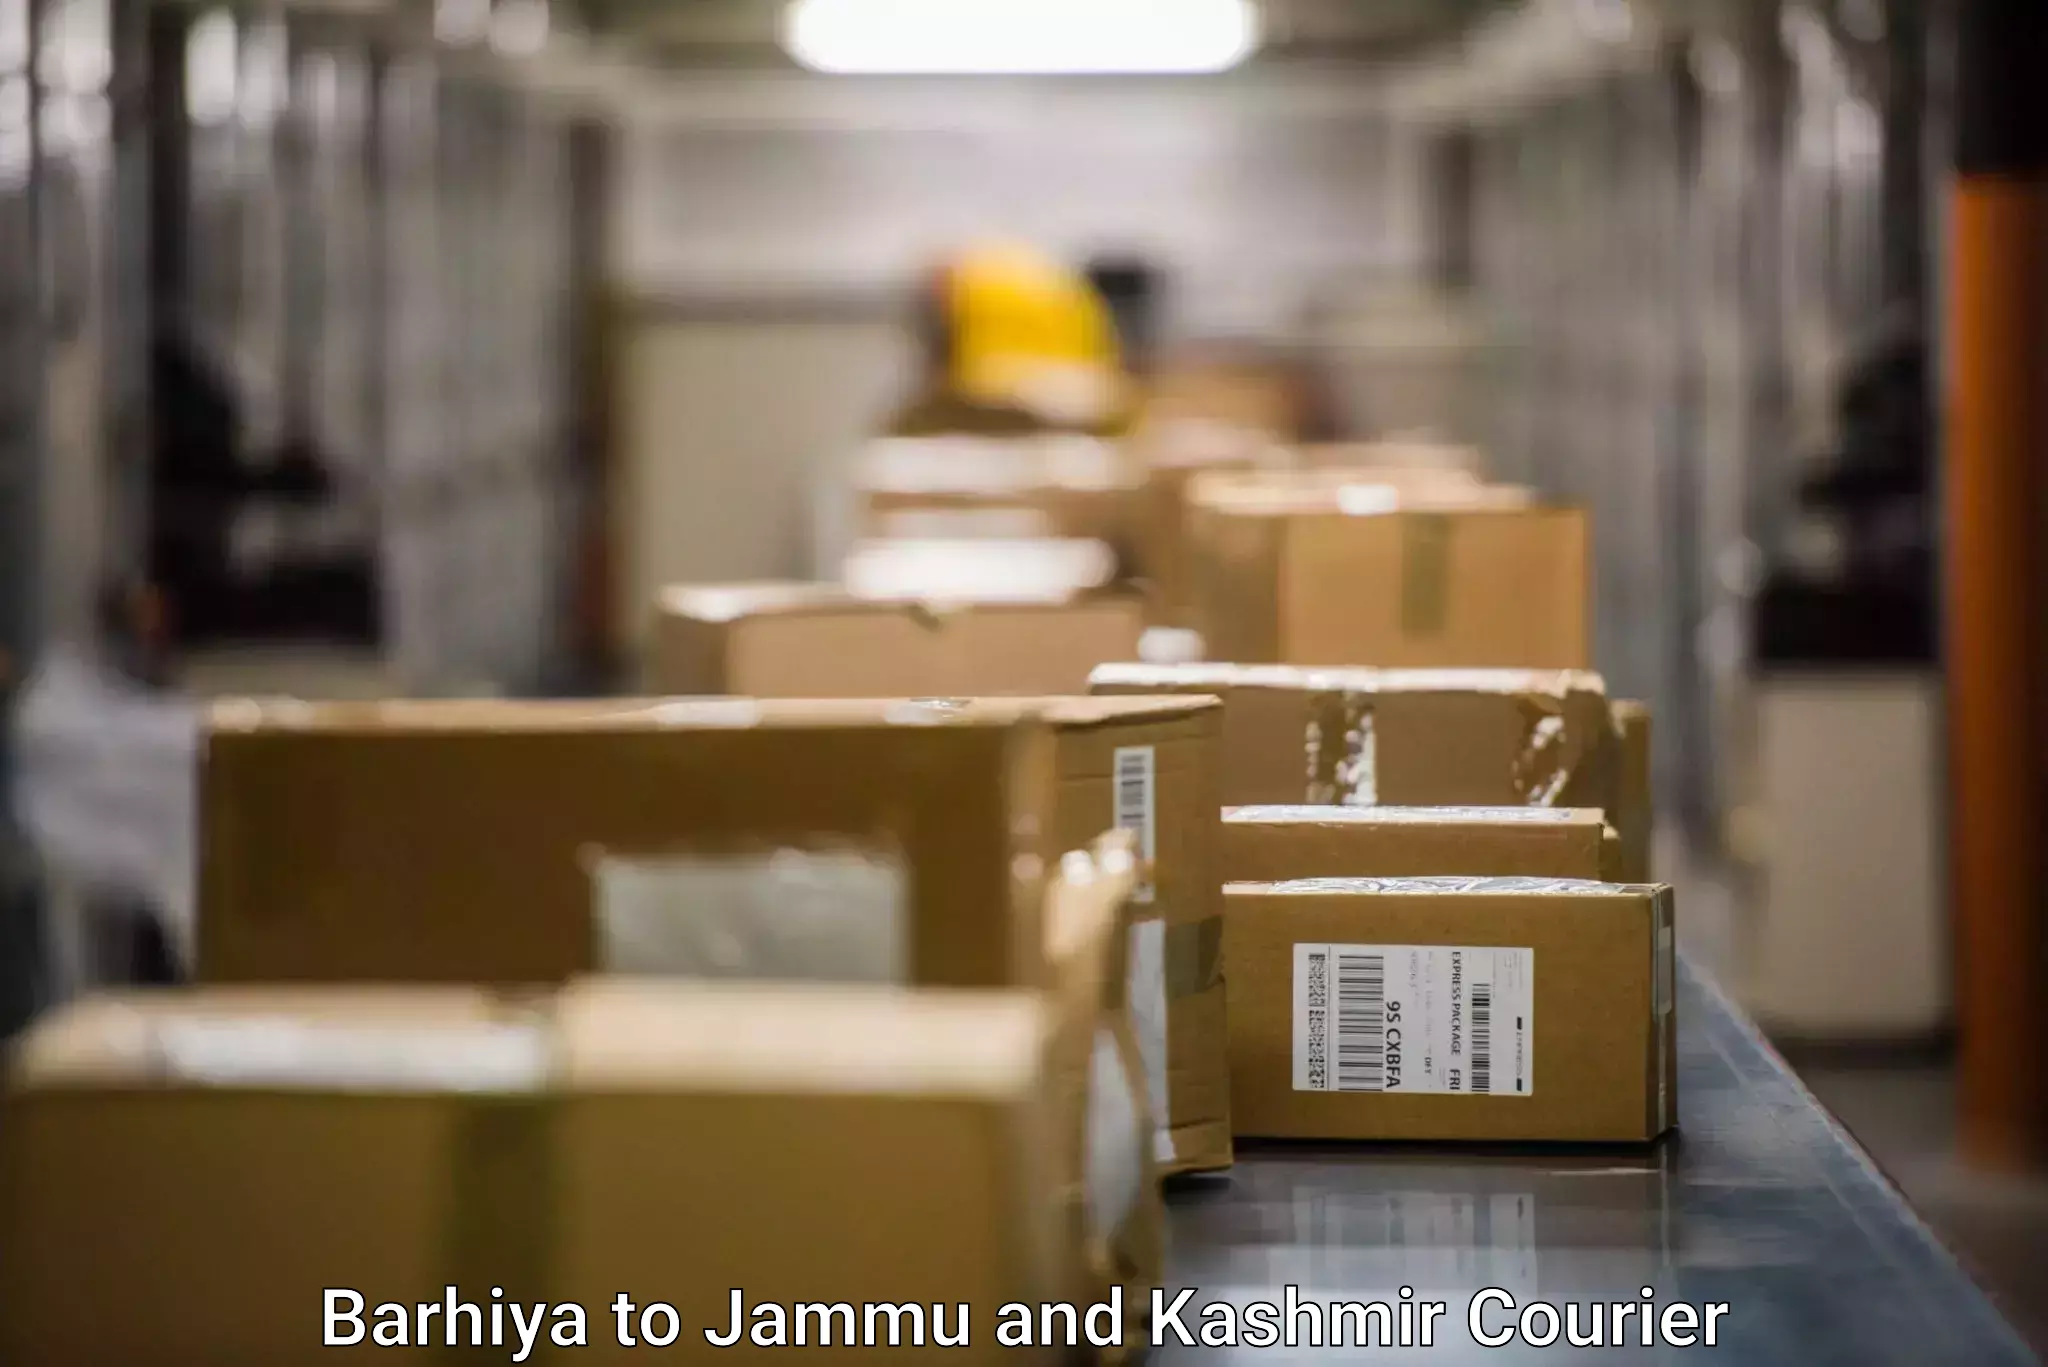 Global shipping solutions Barhiya to Jammu and Kashmir